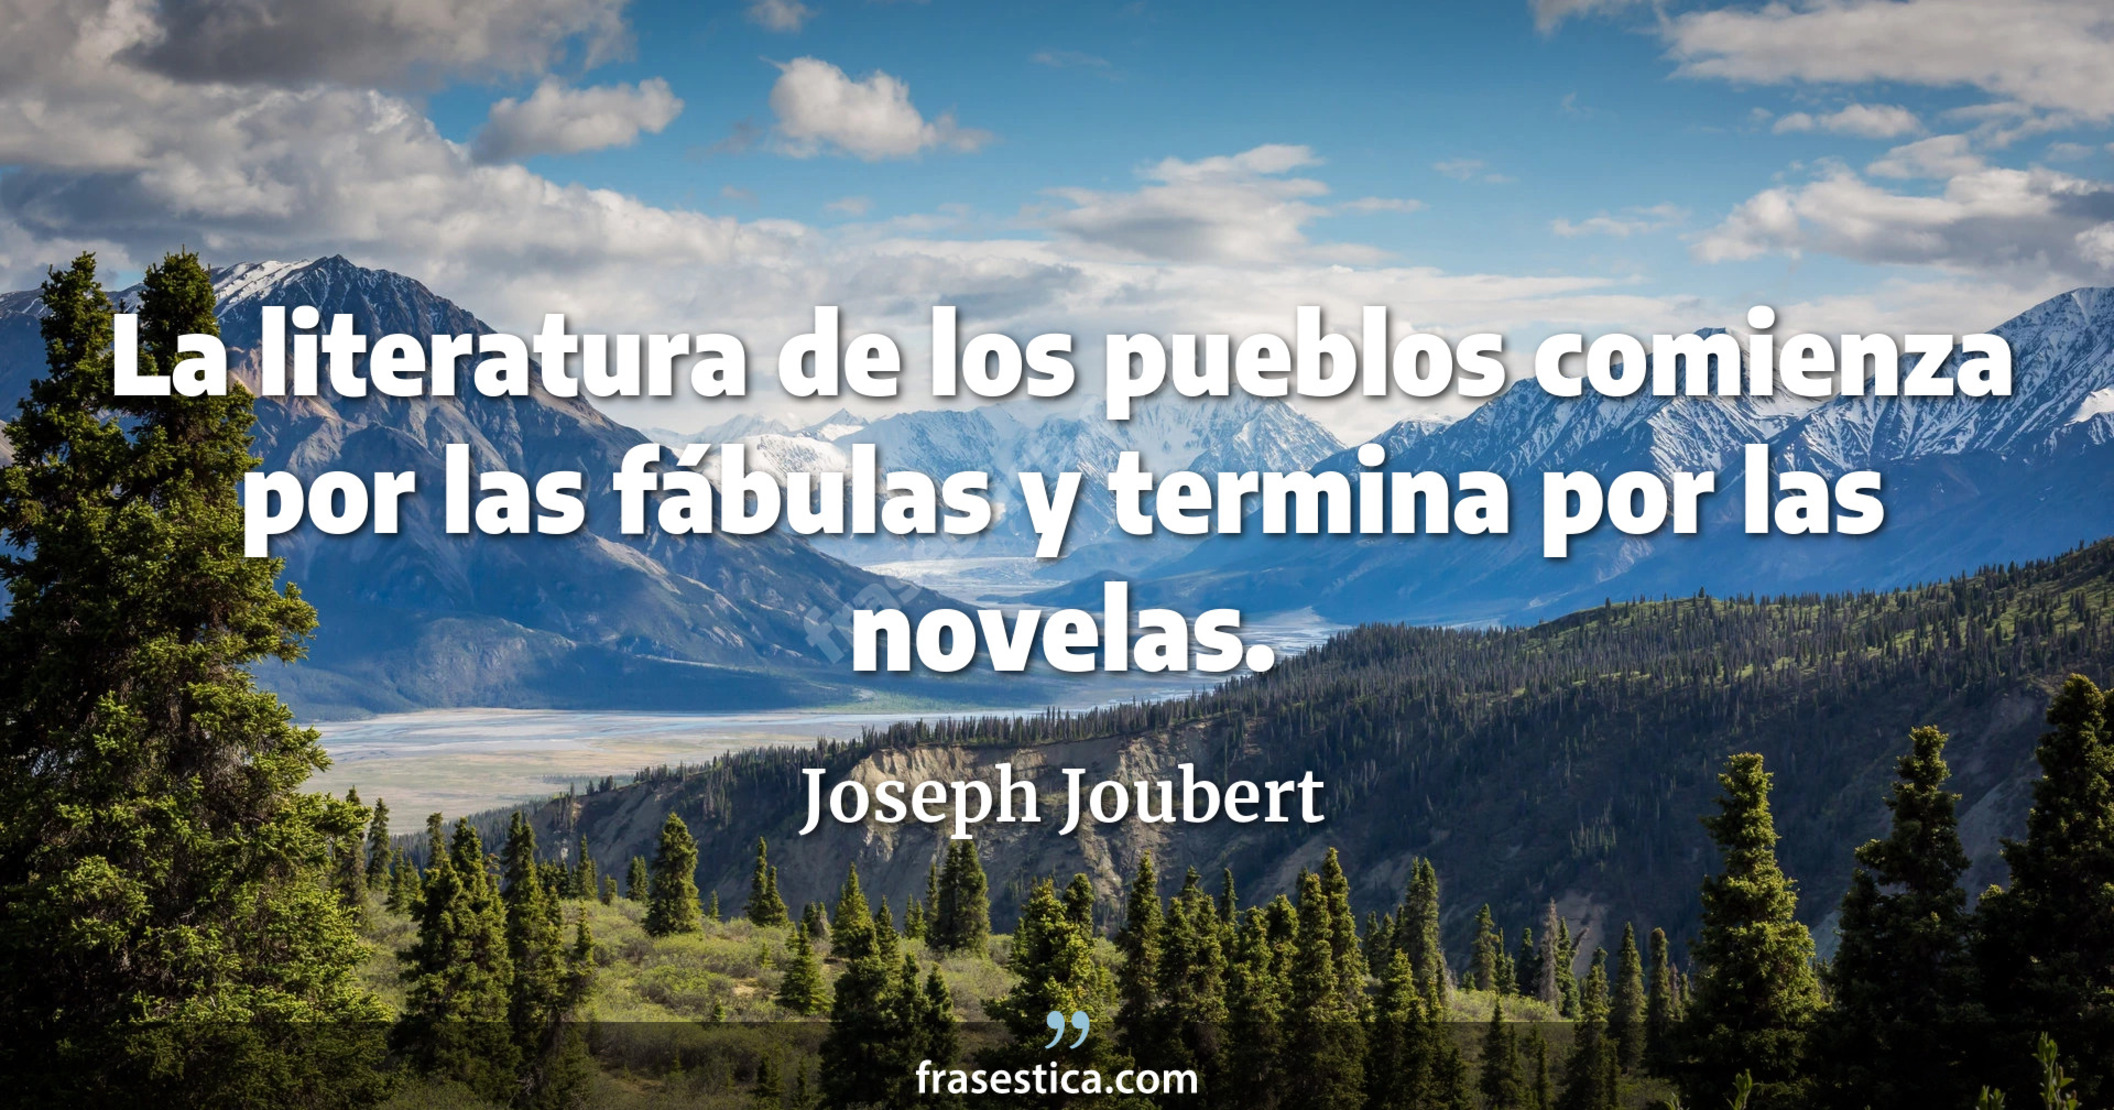 La literatura de los pueblos comienza por las fábulas y termina por las novelas. - Joseph Joubert